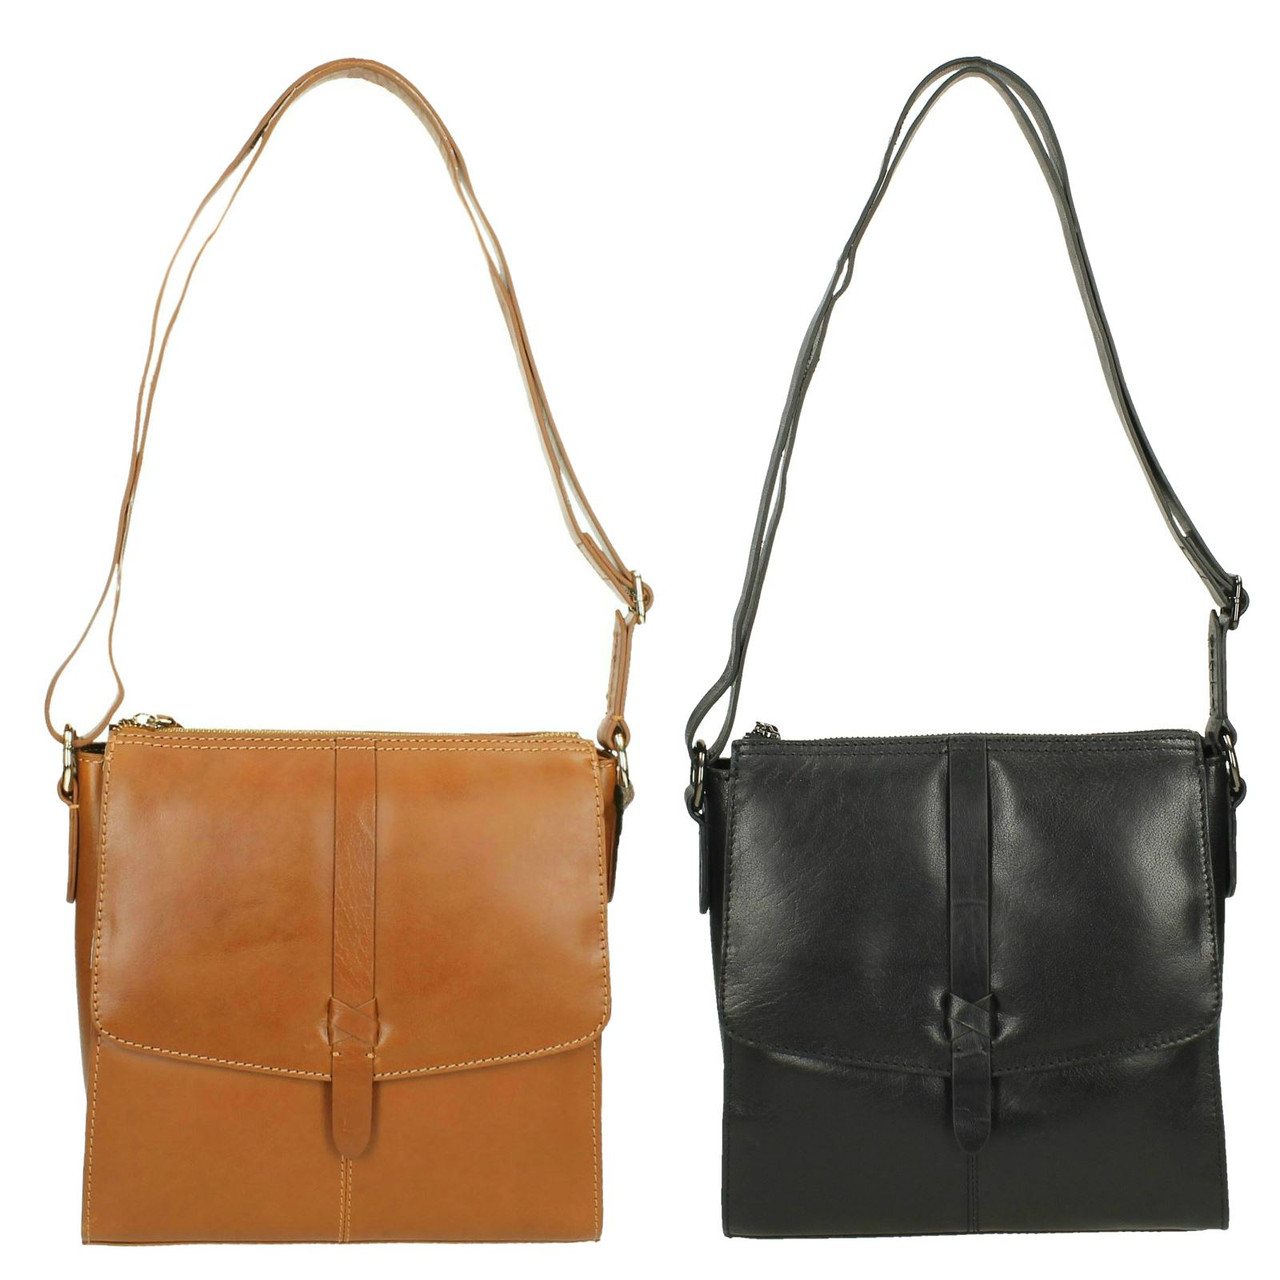 Clarks Backpack Bags & Handbags for Women for sale | eBay